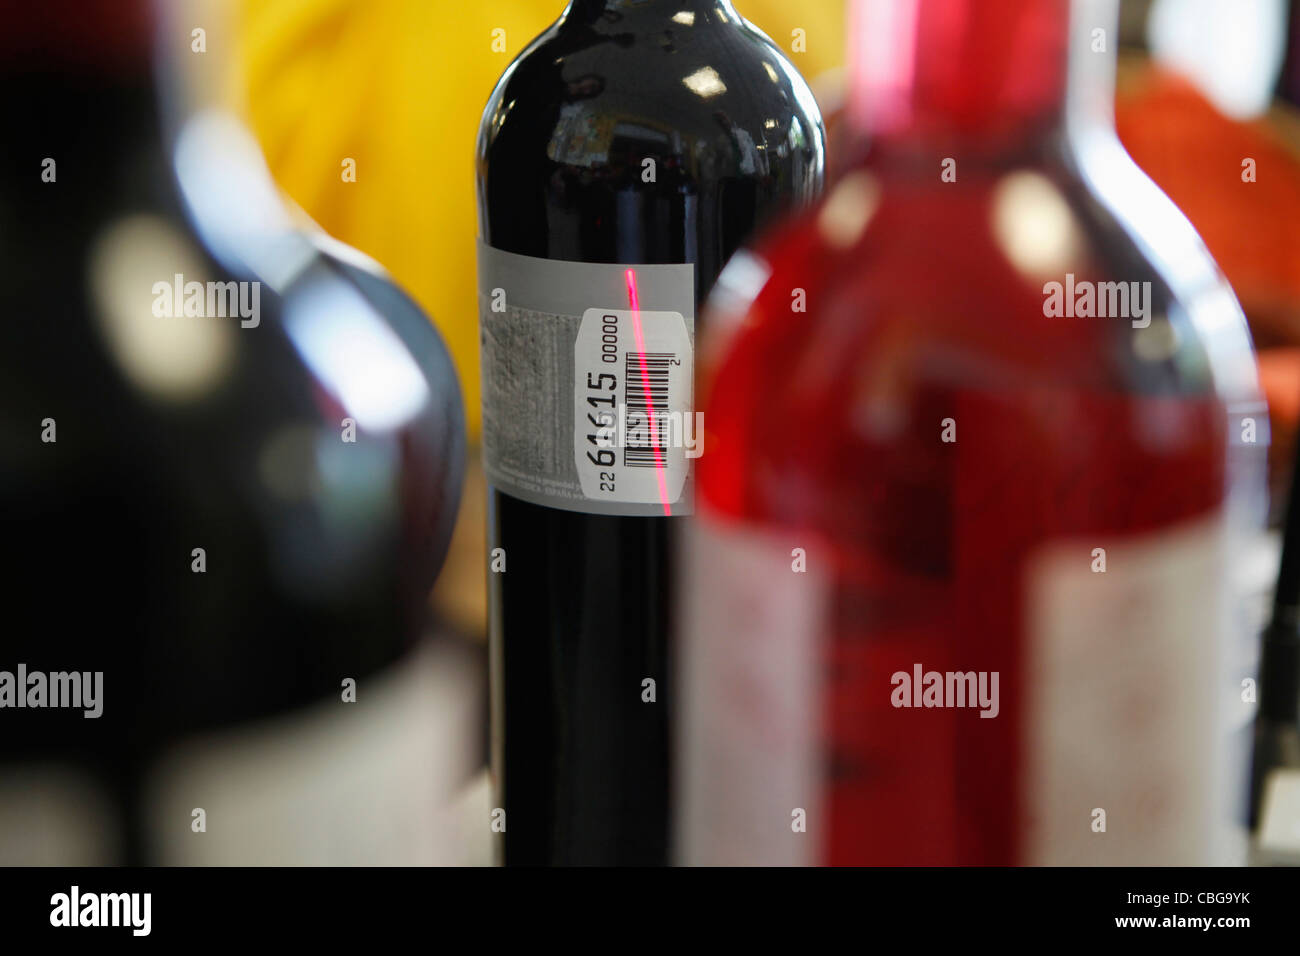 Botella de vino escaneados Foto de stock